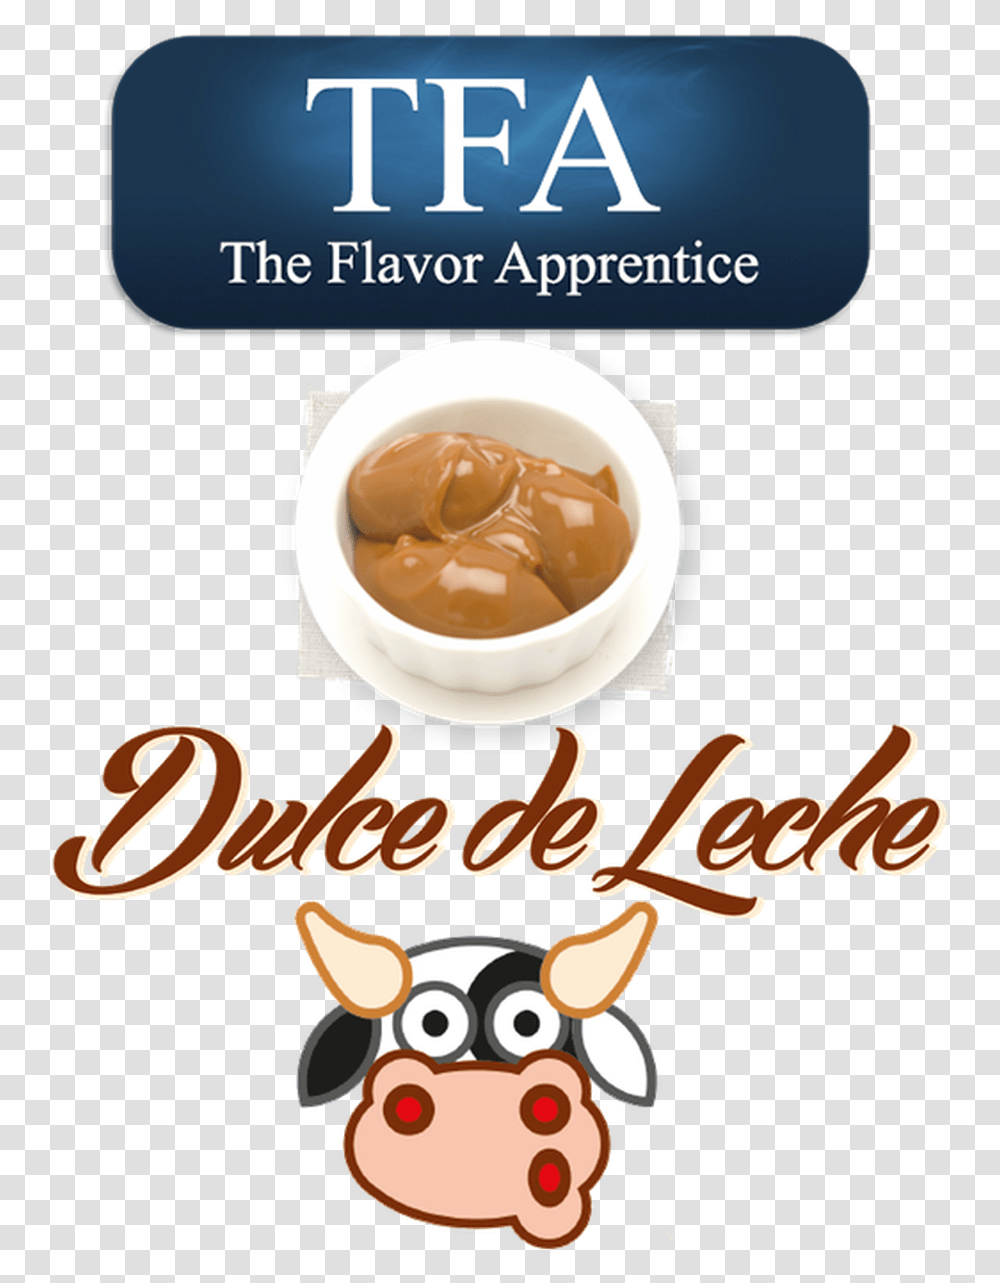 Flavor Apprentice Dulce De Leche Caramel Cartoon, Coffee Cup, Advertisement, Latte, Beverage Transparent Png